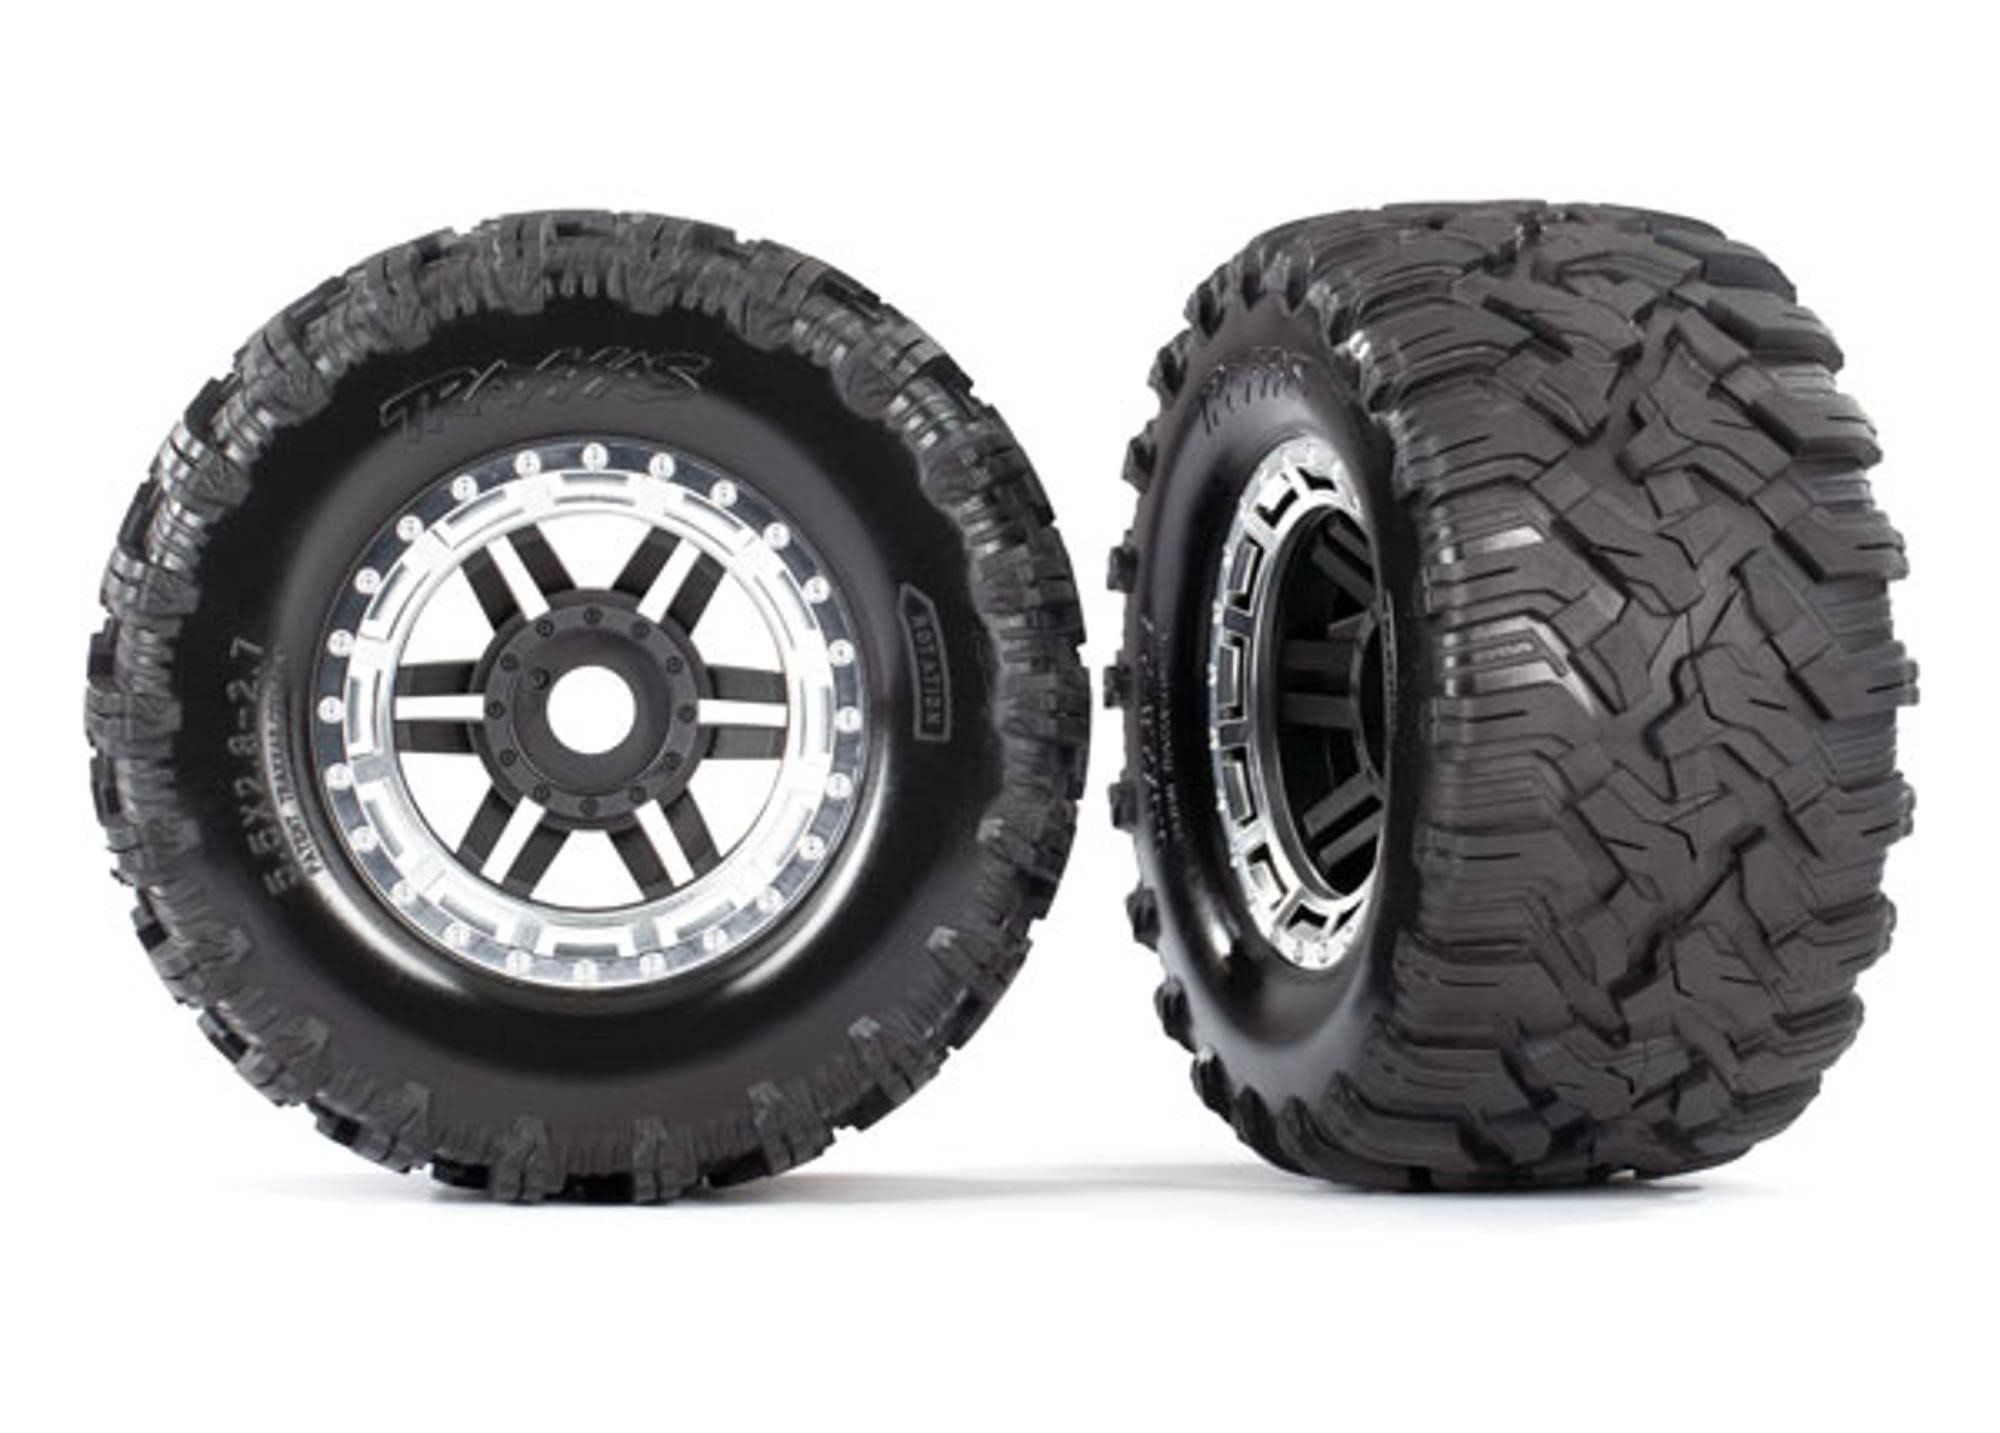 Traxxas 8972X Tires & Wheels, Black, Satin Chrome Beadlock Style, Maxx MT Tires